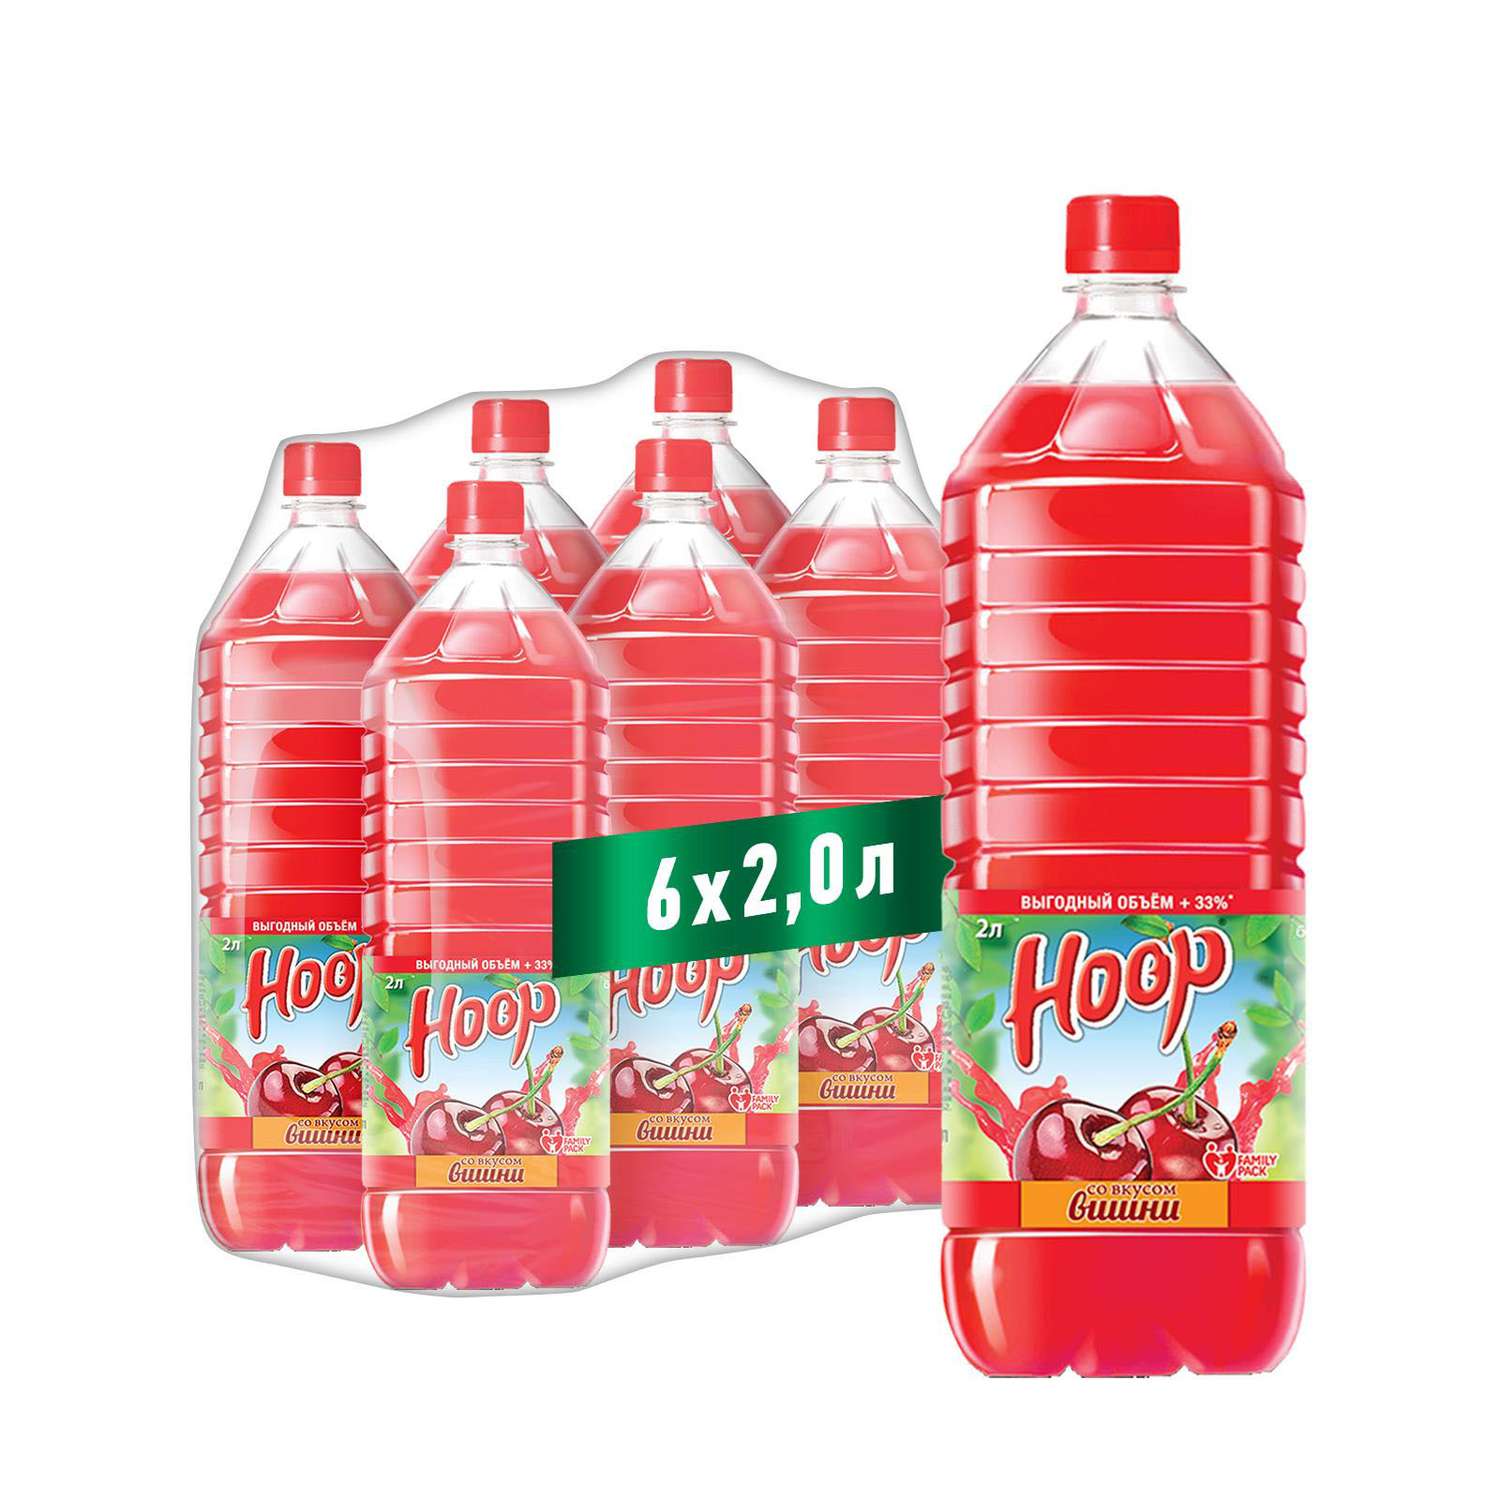 Негазированный напиток HOOP вишнёвый вкус 2л - фото 1